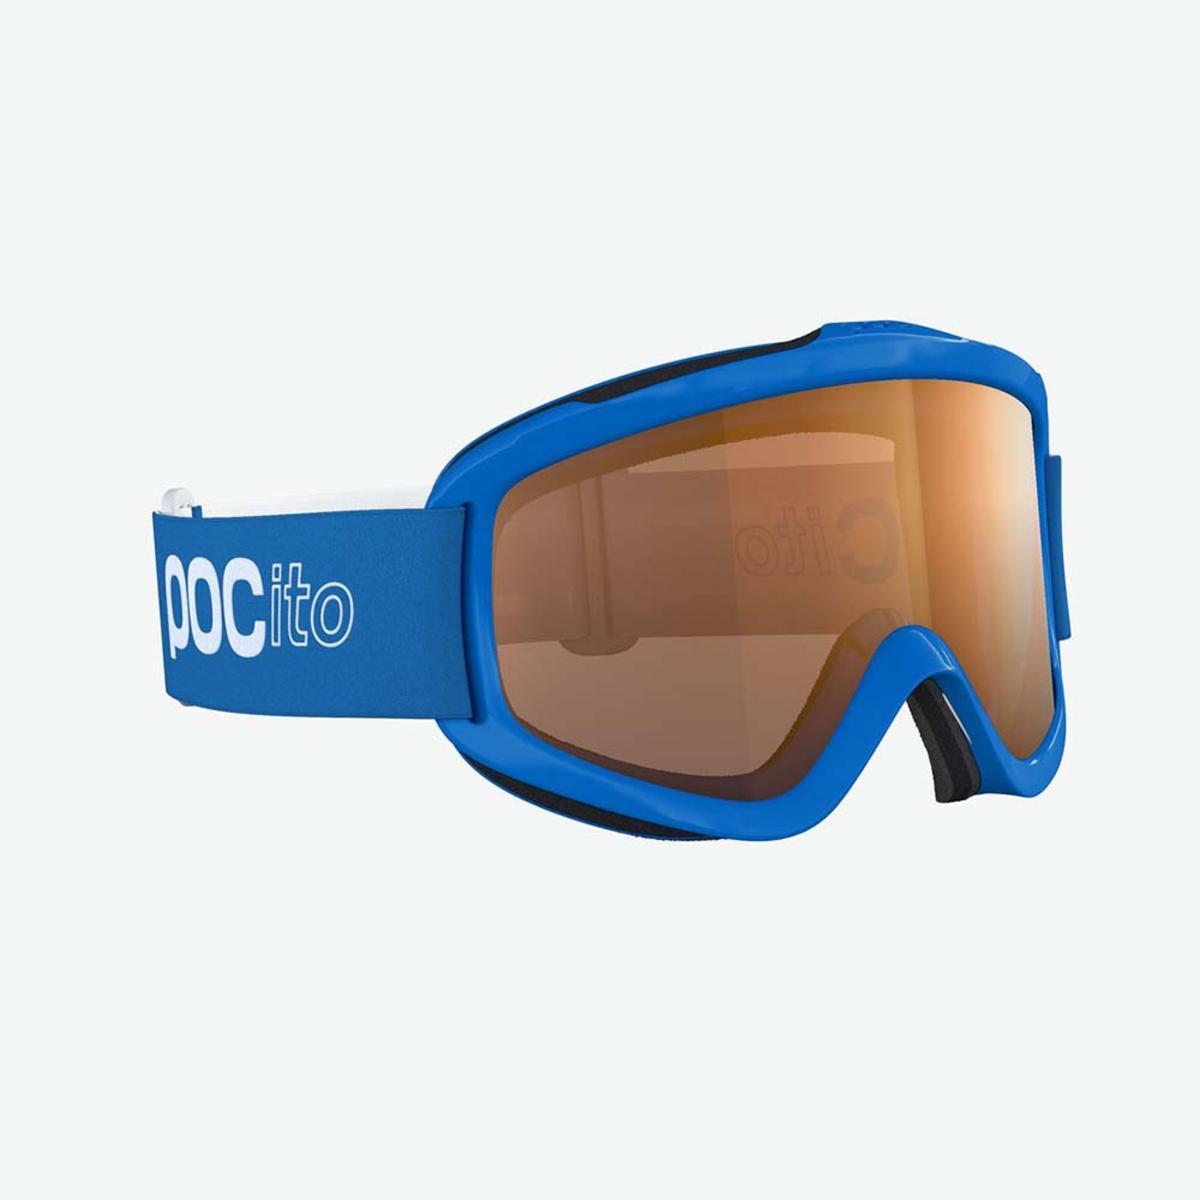 POC Kid's Pocito Iris Goggles - Fluorescent Blue